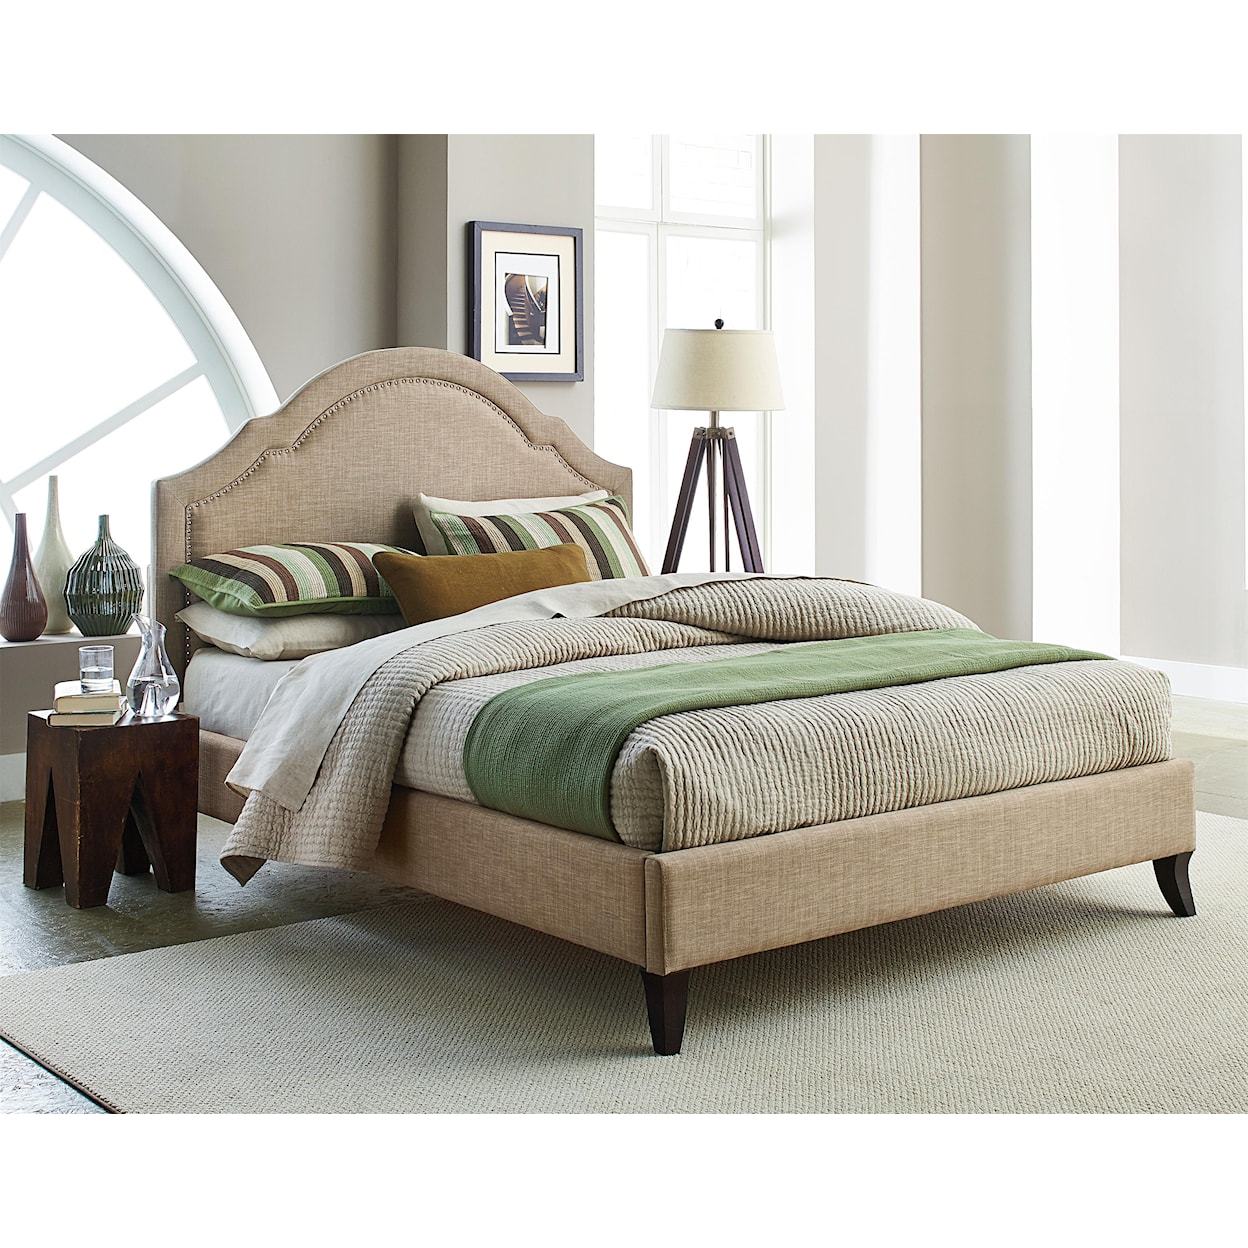 Standard Furniture Simplicity King Upholstered Platform Bed